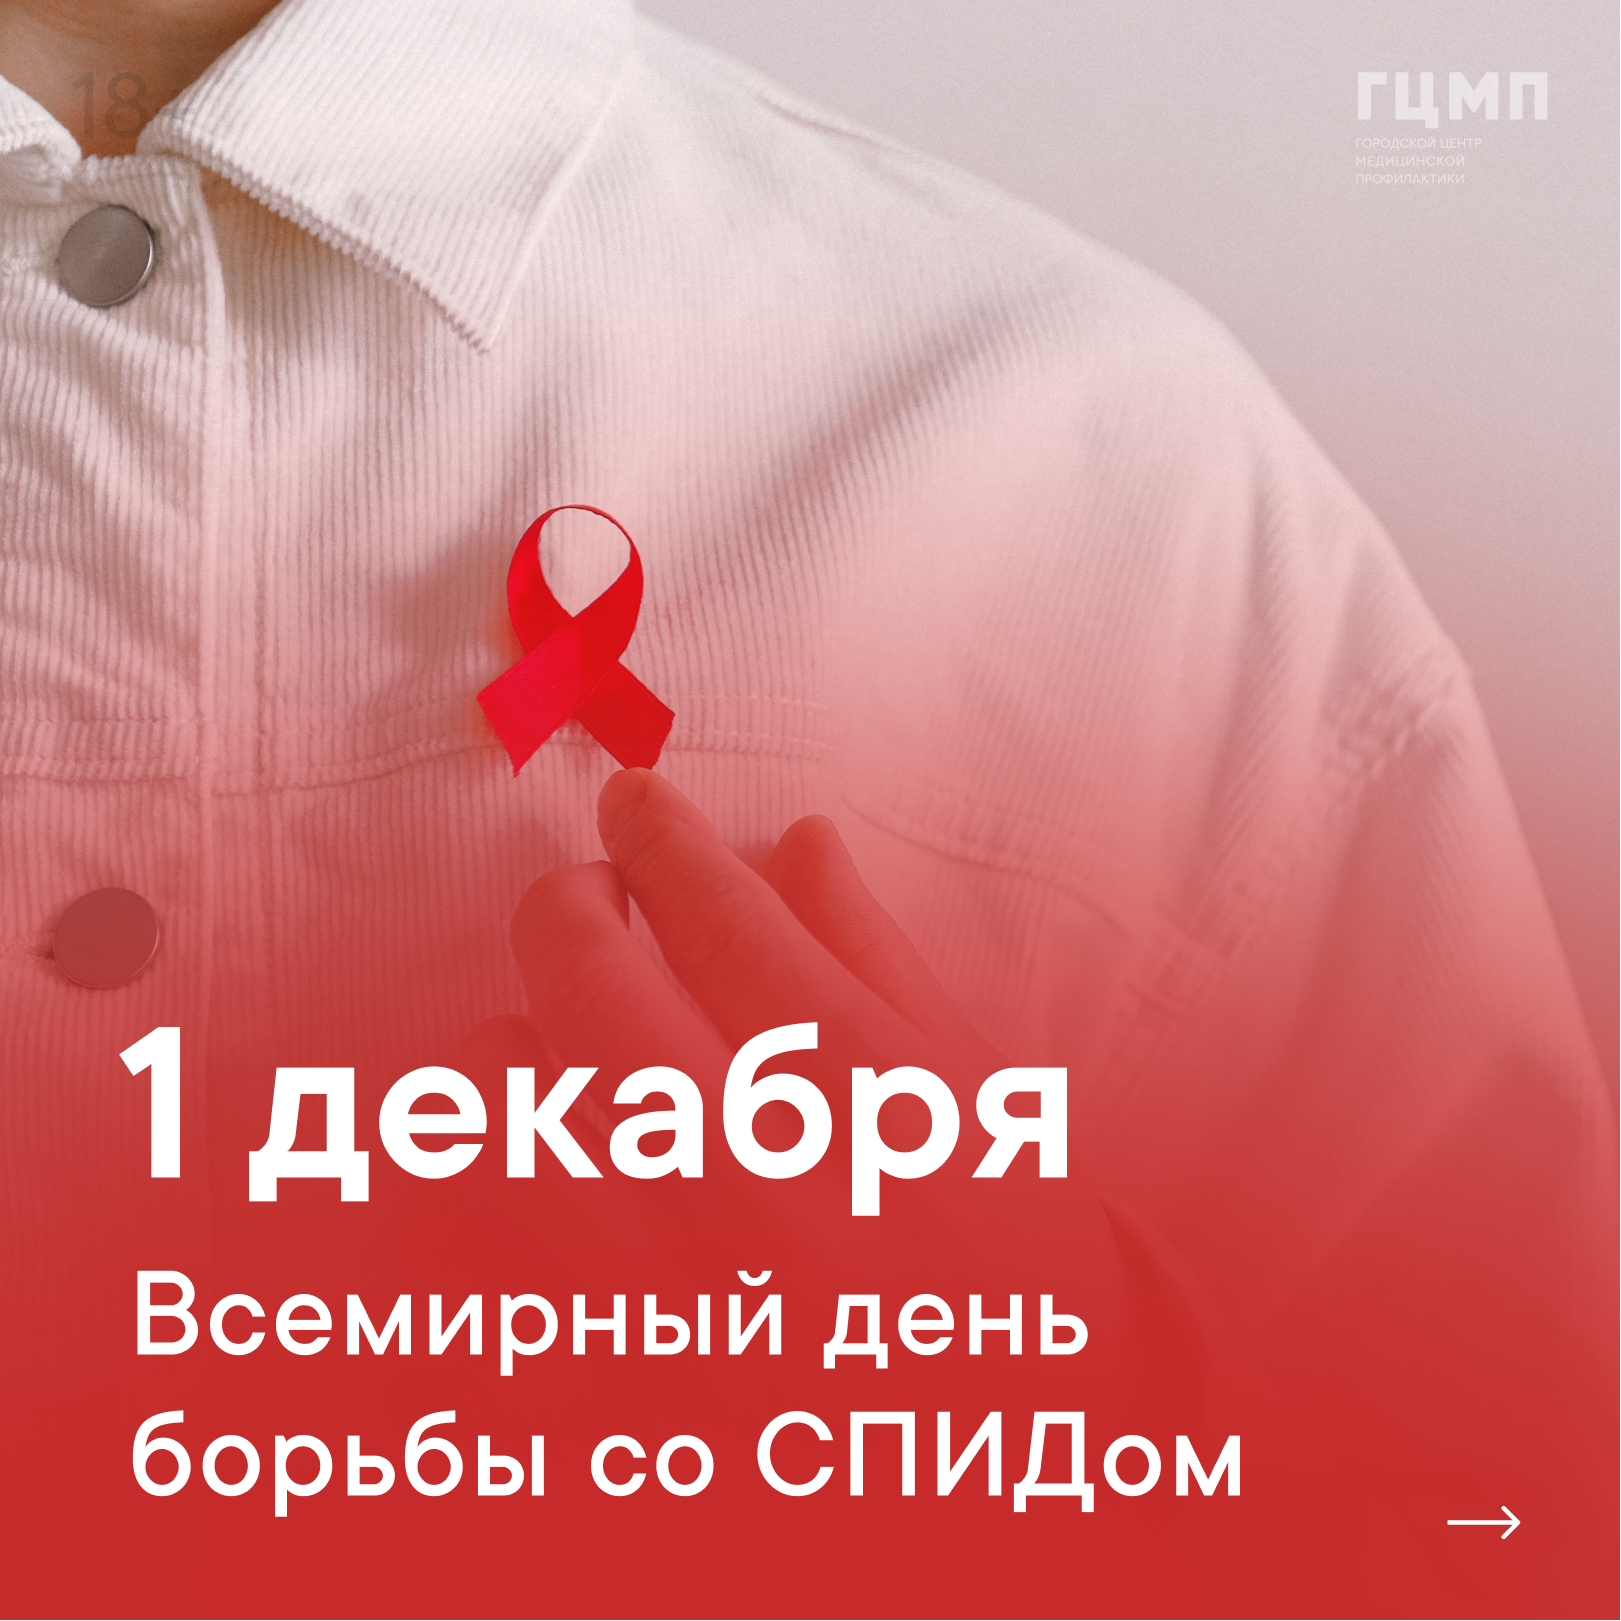 Всемирный день борьбы со. Права ВИЧ инфицированных картинки. Борьба со СПИДОМ айфон 13.